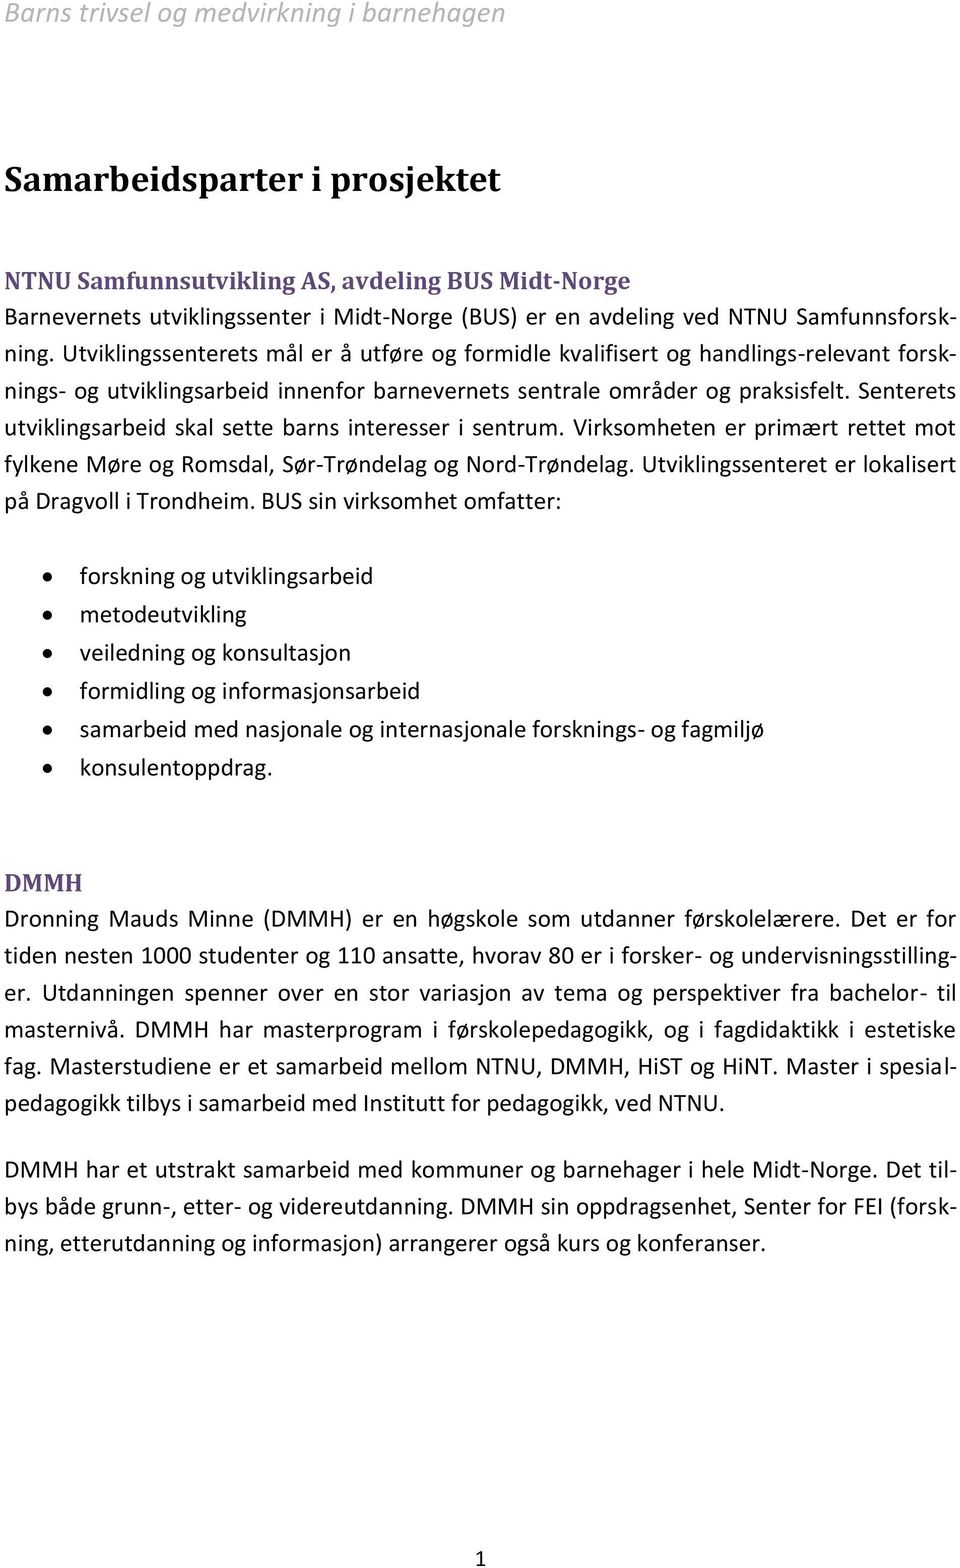 Senterets utviklingsarbeid skal sette barns interesser i sentrum. Virksomheten er primært rettet mot fylkene Møre og Romsdal, Sør-Trøndelag og Nord-Trøndelag.